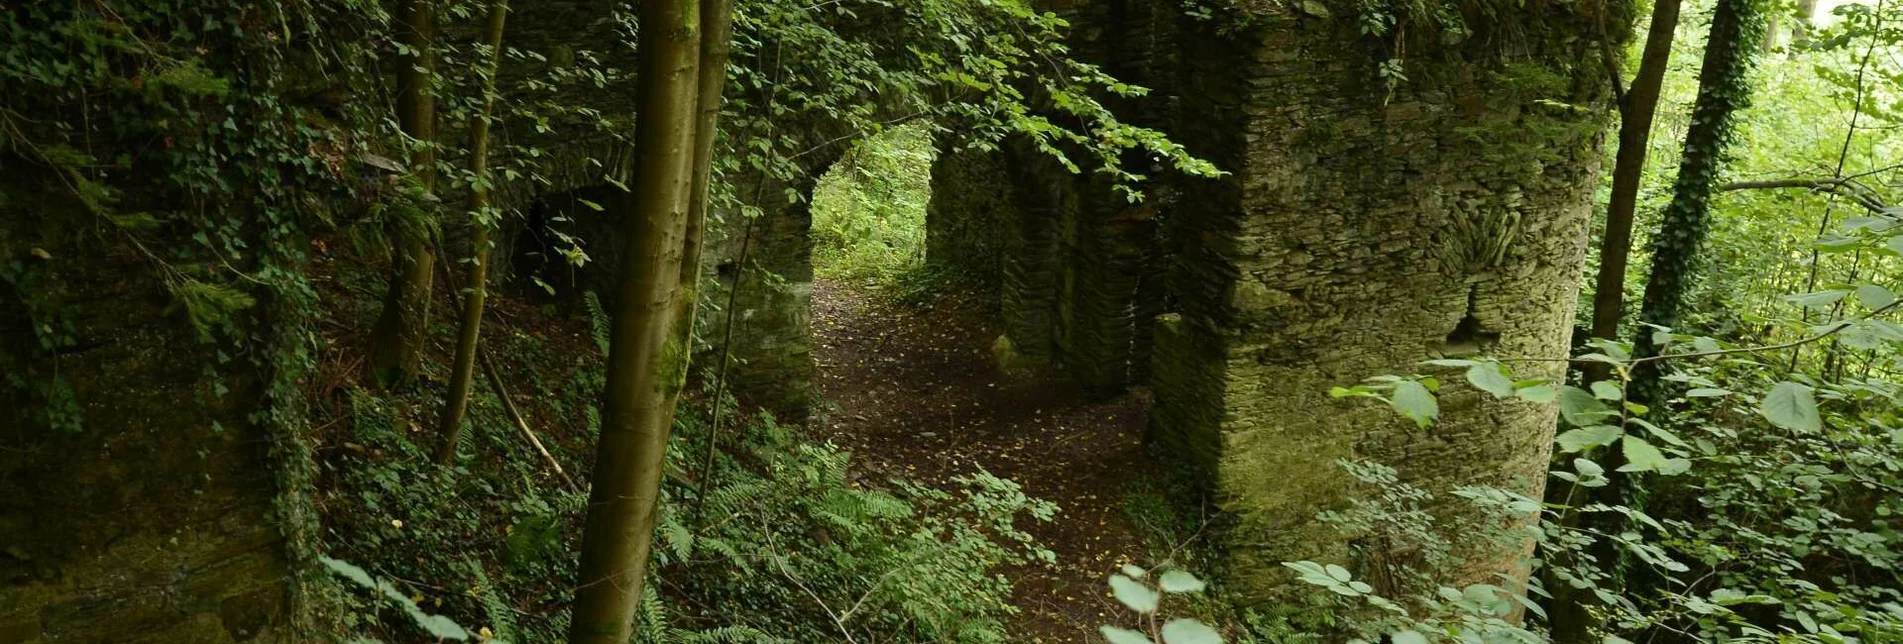 Wanderung Ruinen-Runde: Von Alt Leonroth bis Neu Leonroth - Touren-Impression #1 | © Community